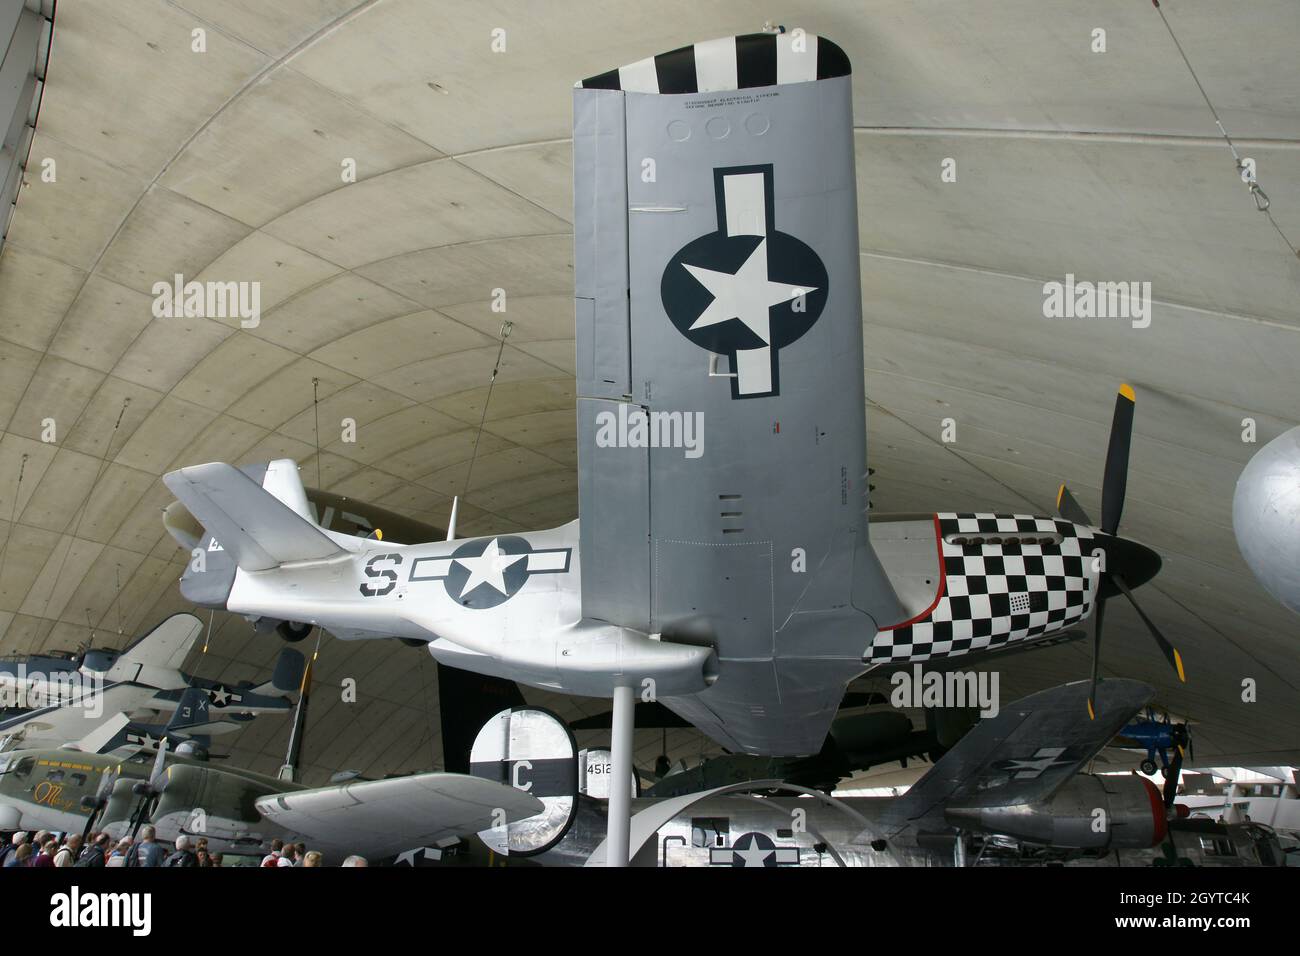 P-51 Mustang 78e groupe de chasseurs USAAF Duxford, avion de chasse WW2 Banque D'Images